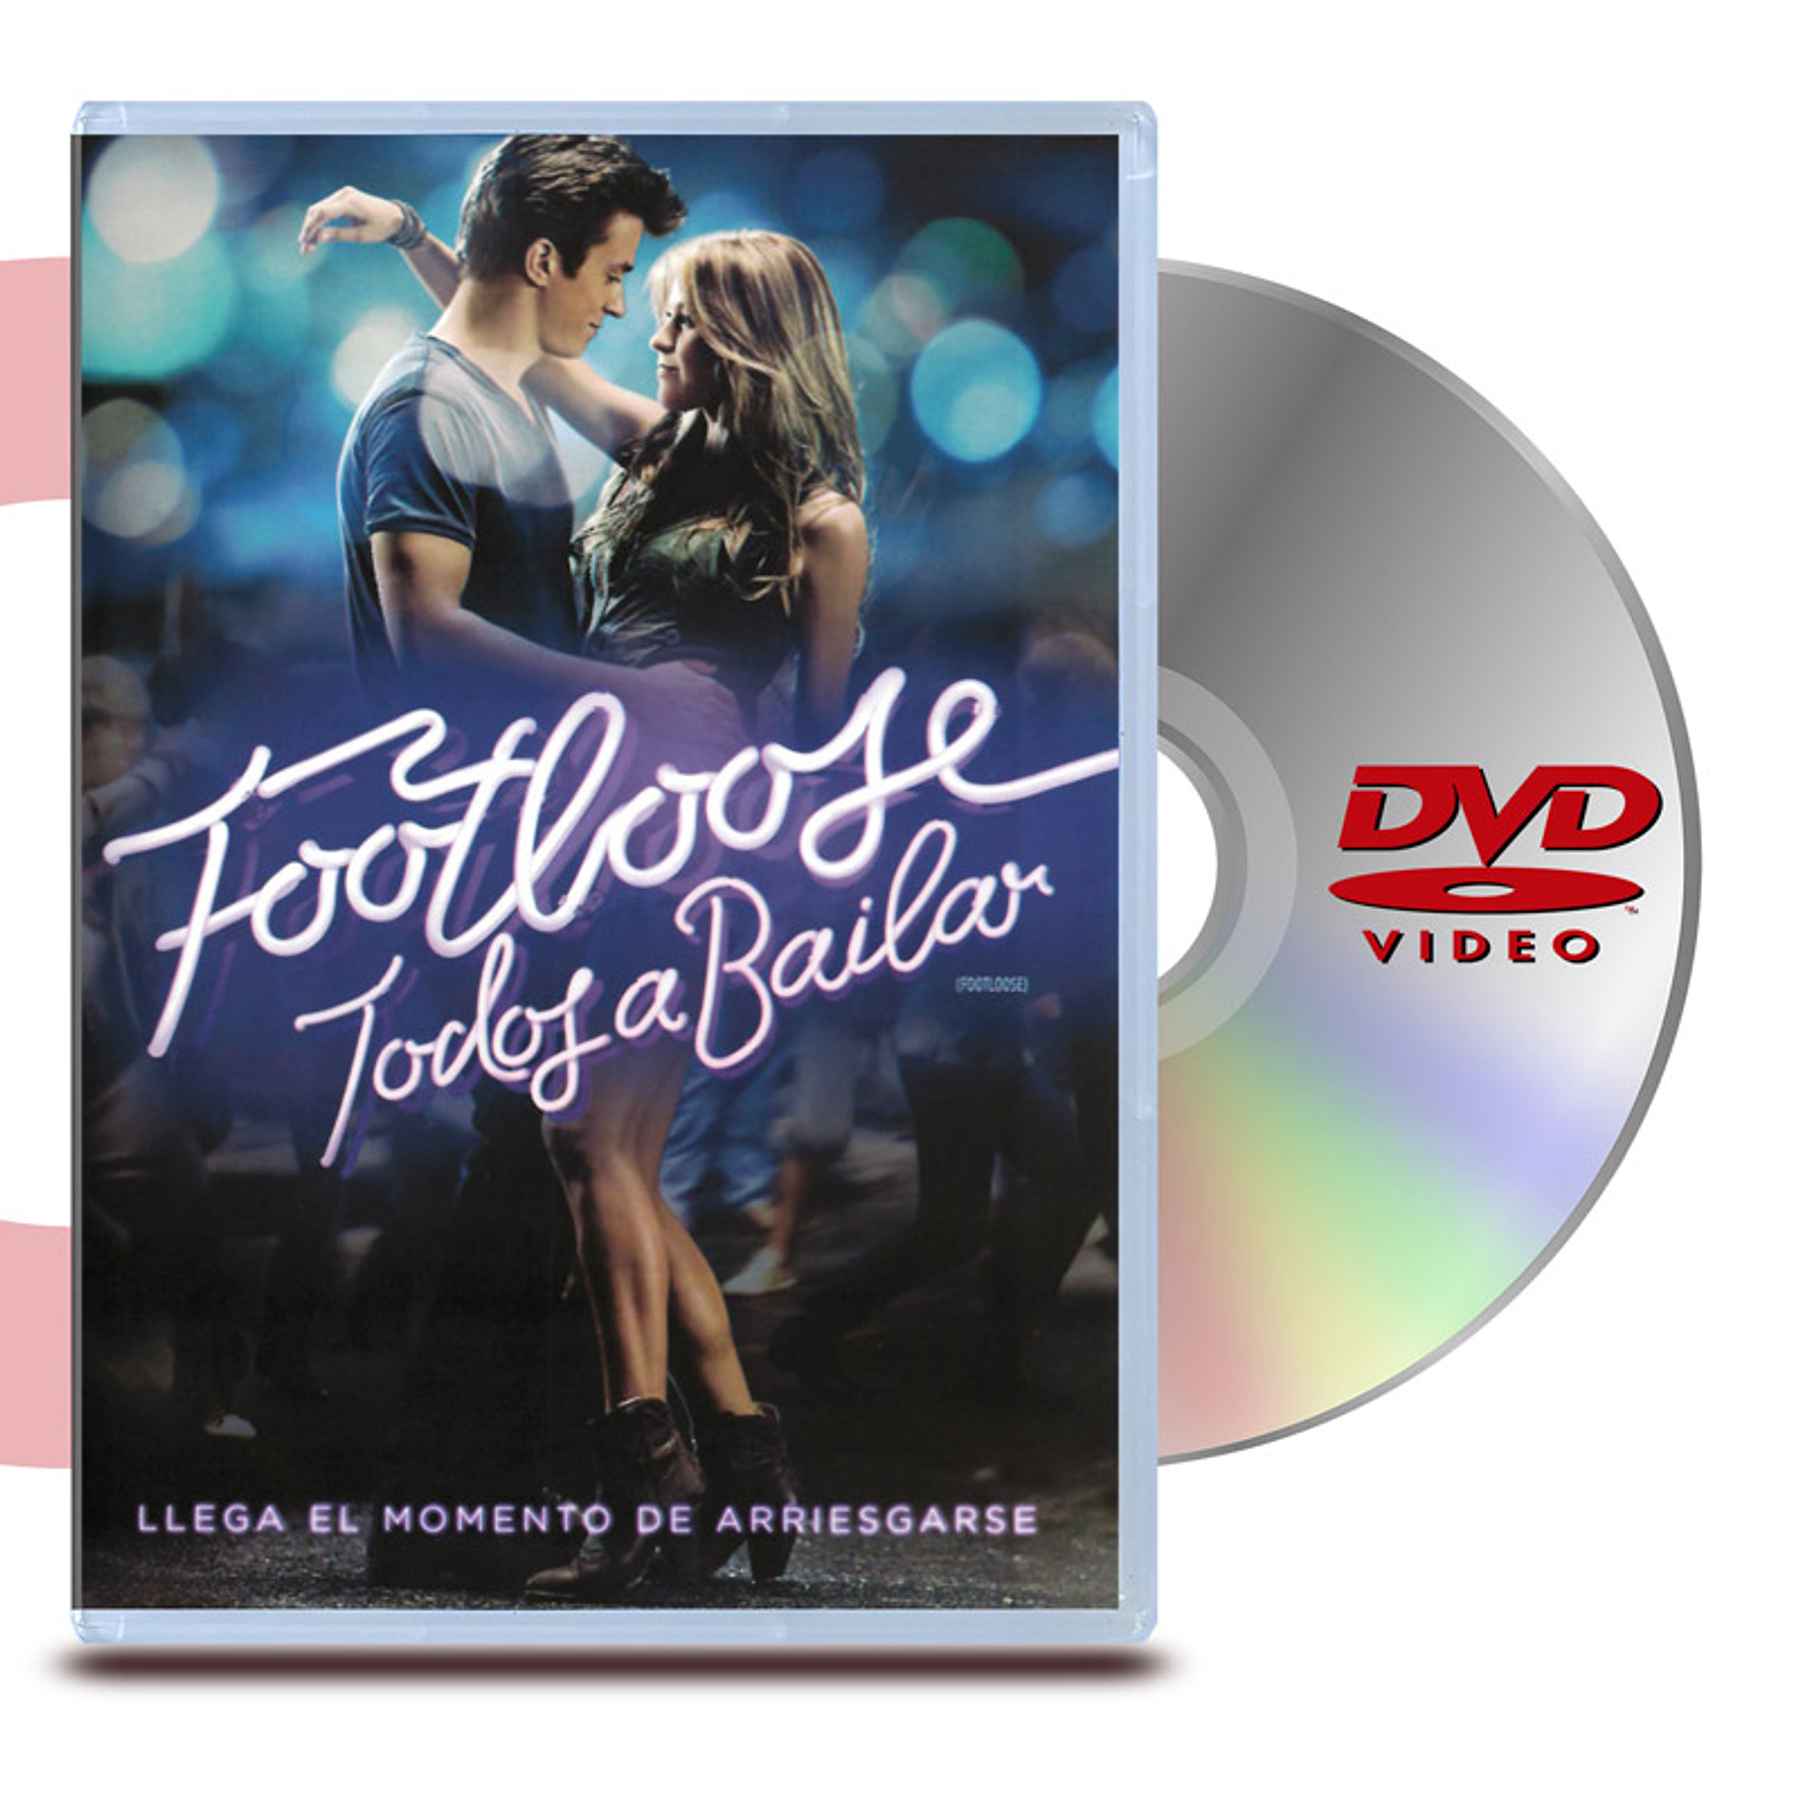 DVD TODOS A BAILAR (FOOTLOOSE- REMAKE)